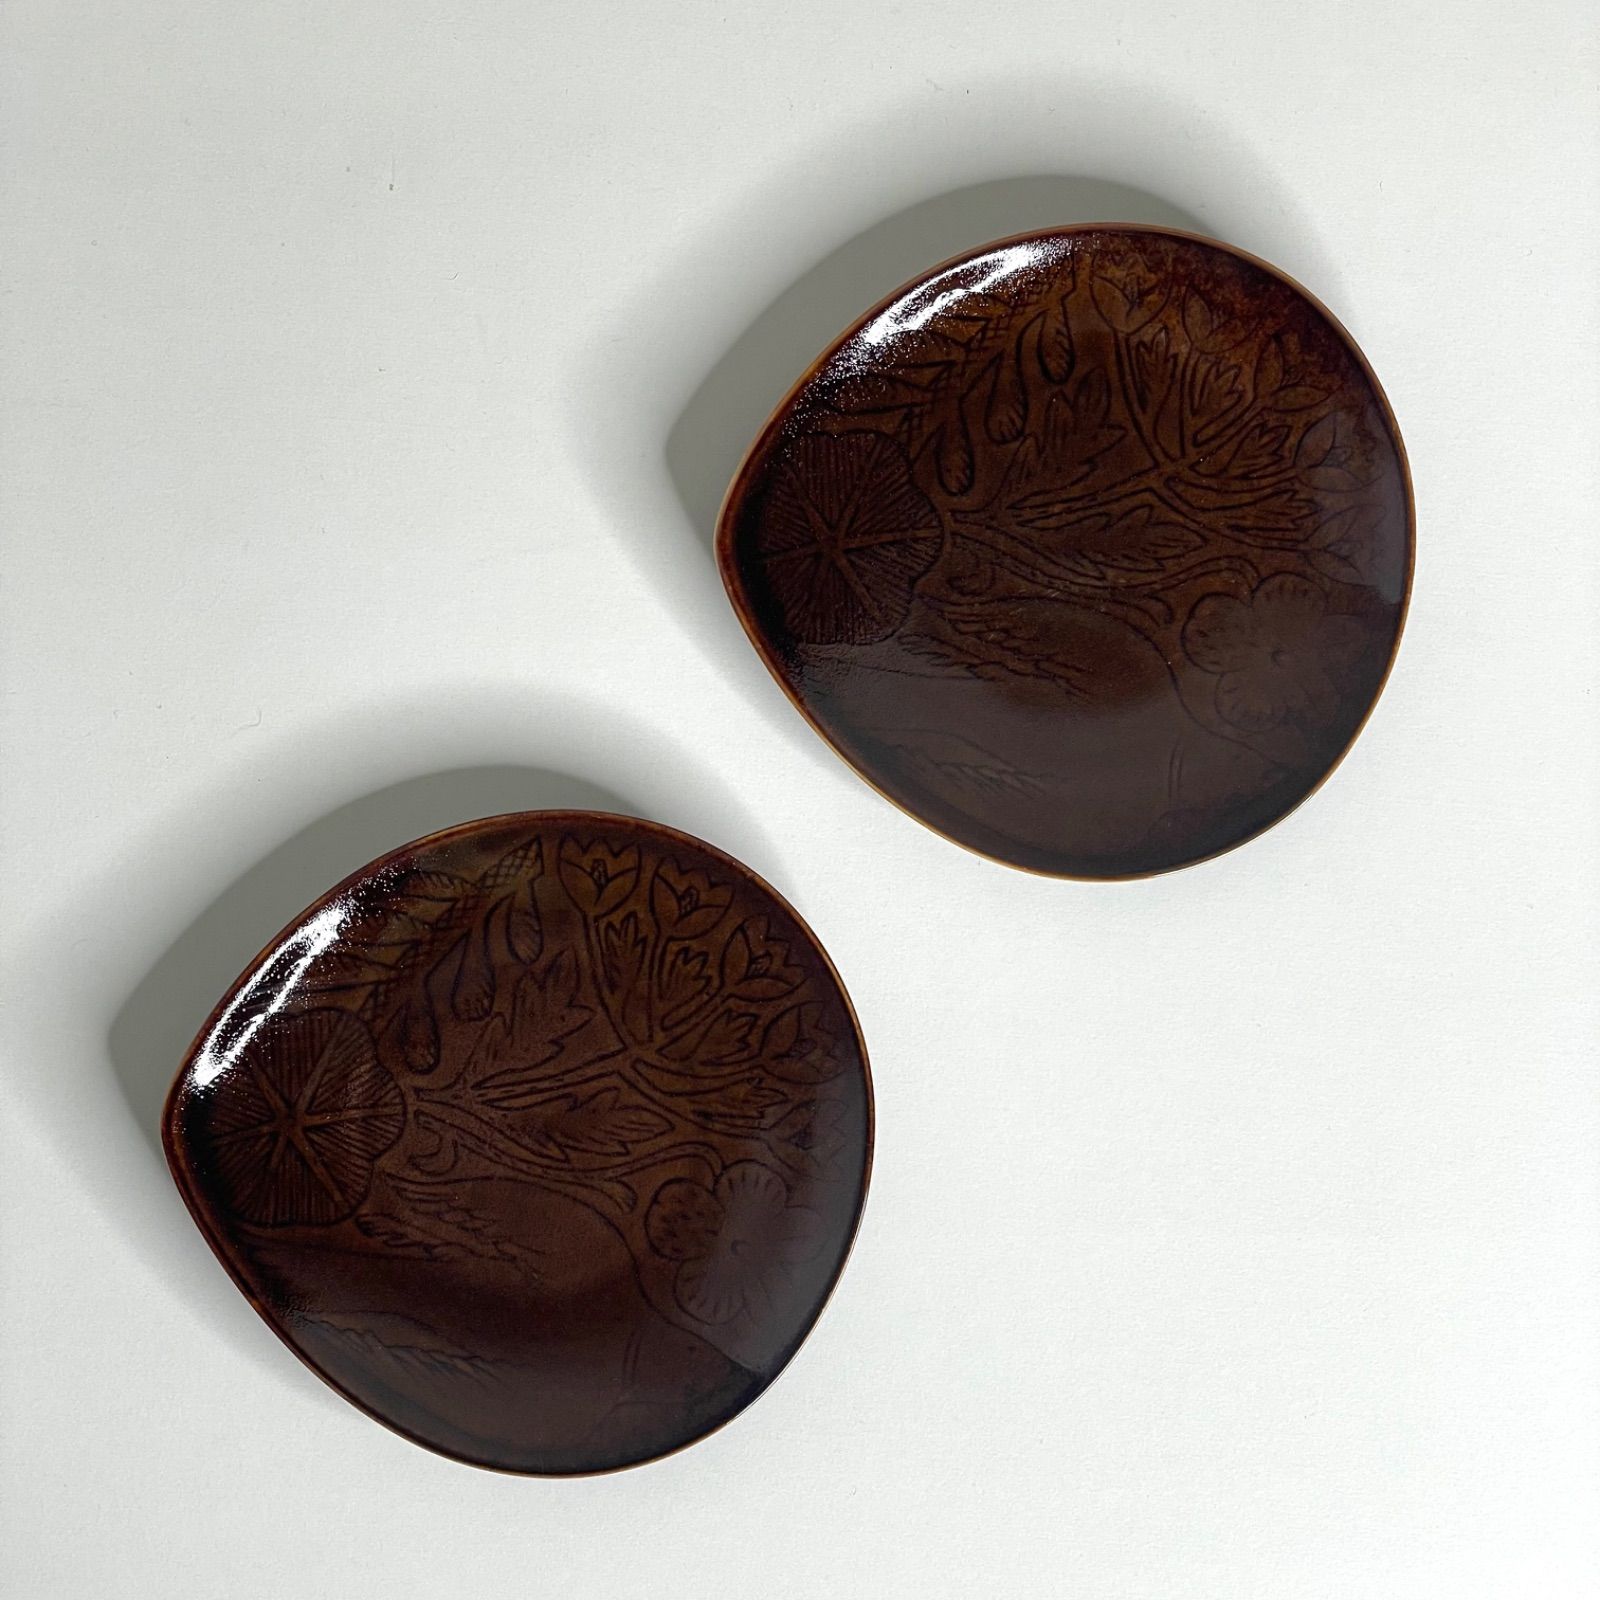 鹿児島睦×イイホシユミコのお皿 フローロ、2枚セット